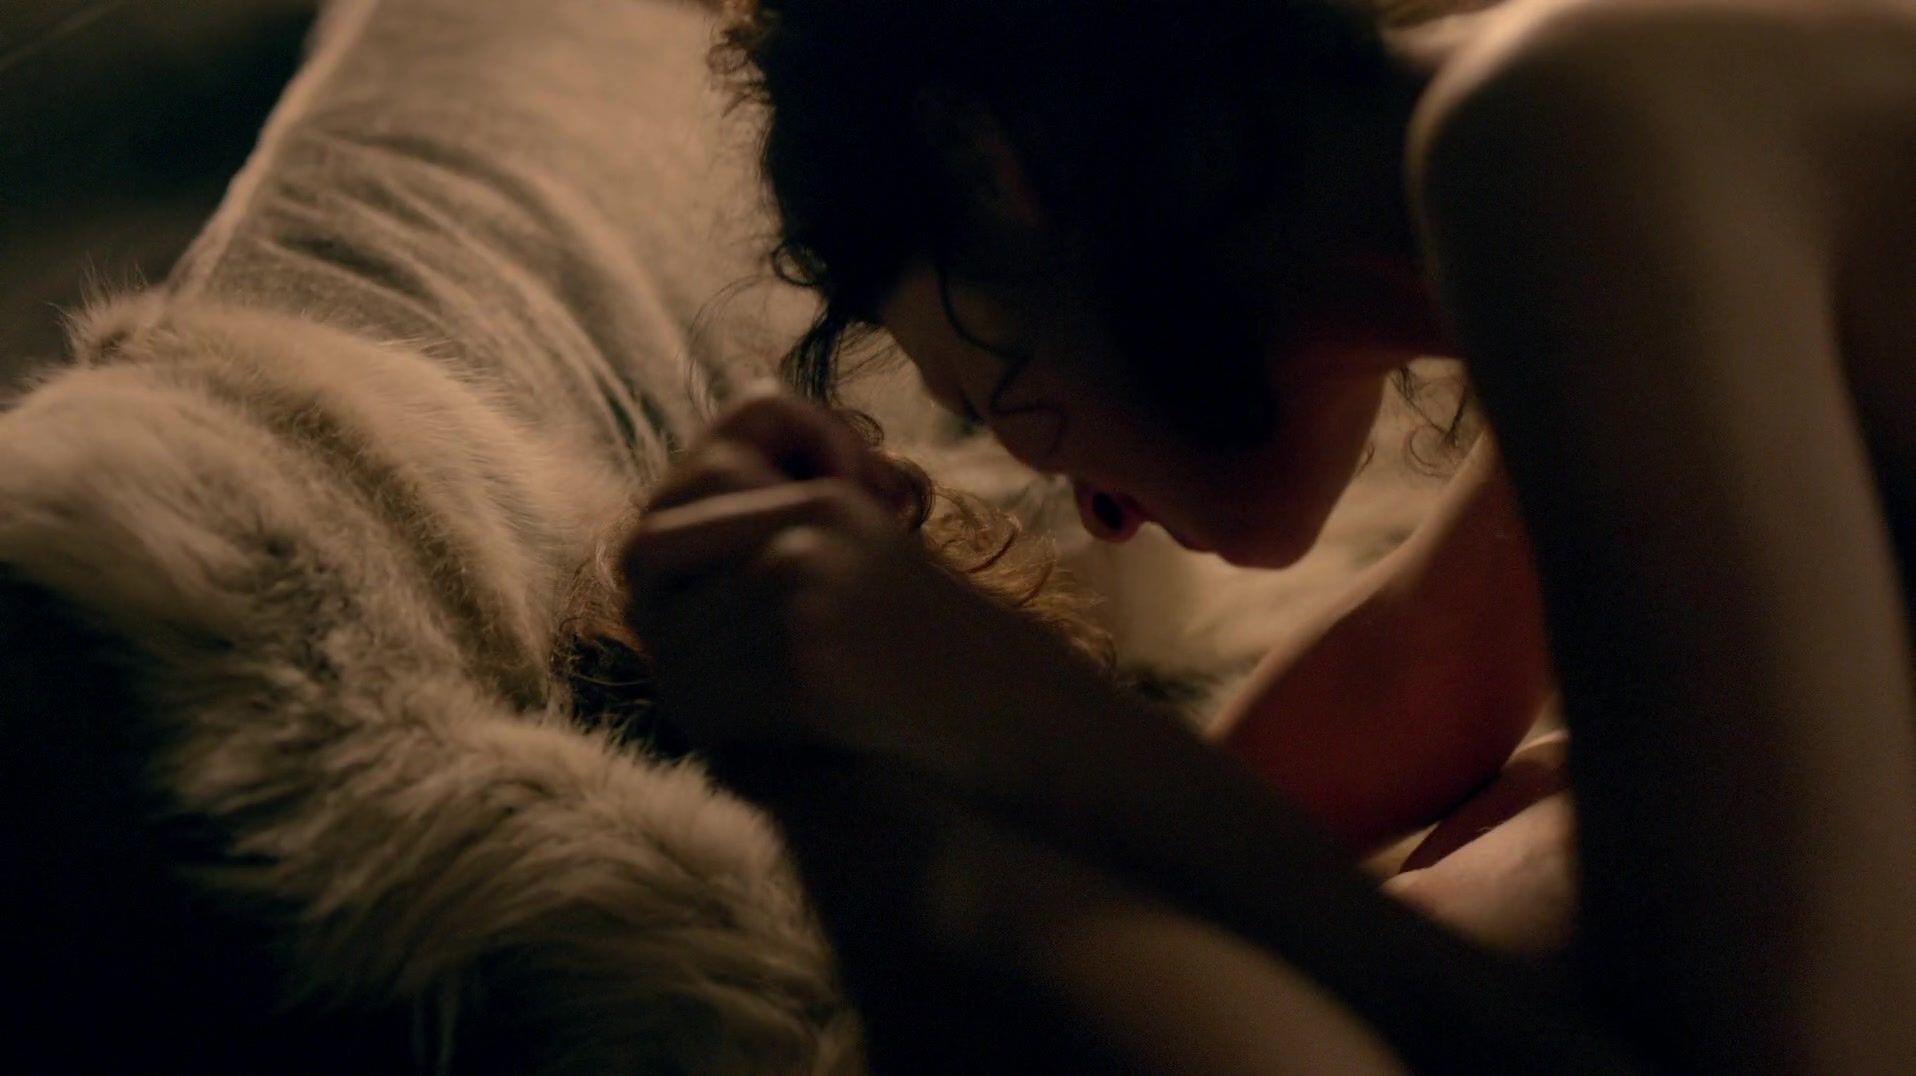 Cuzinho Sex scene of naked Caitriona Balfe | TV show "Outlander" Alexis Texas